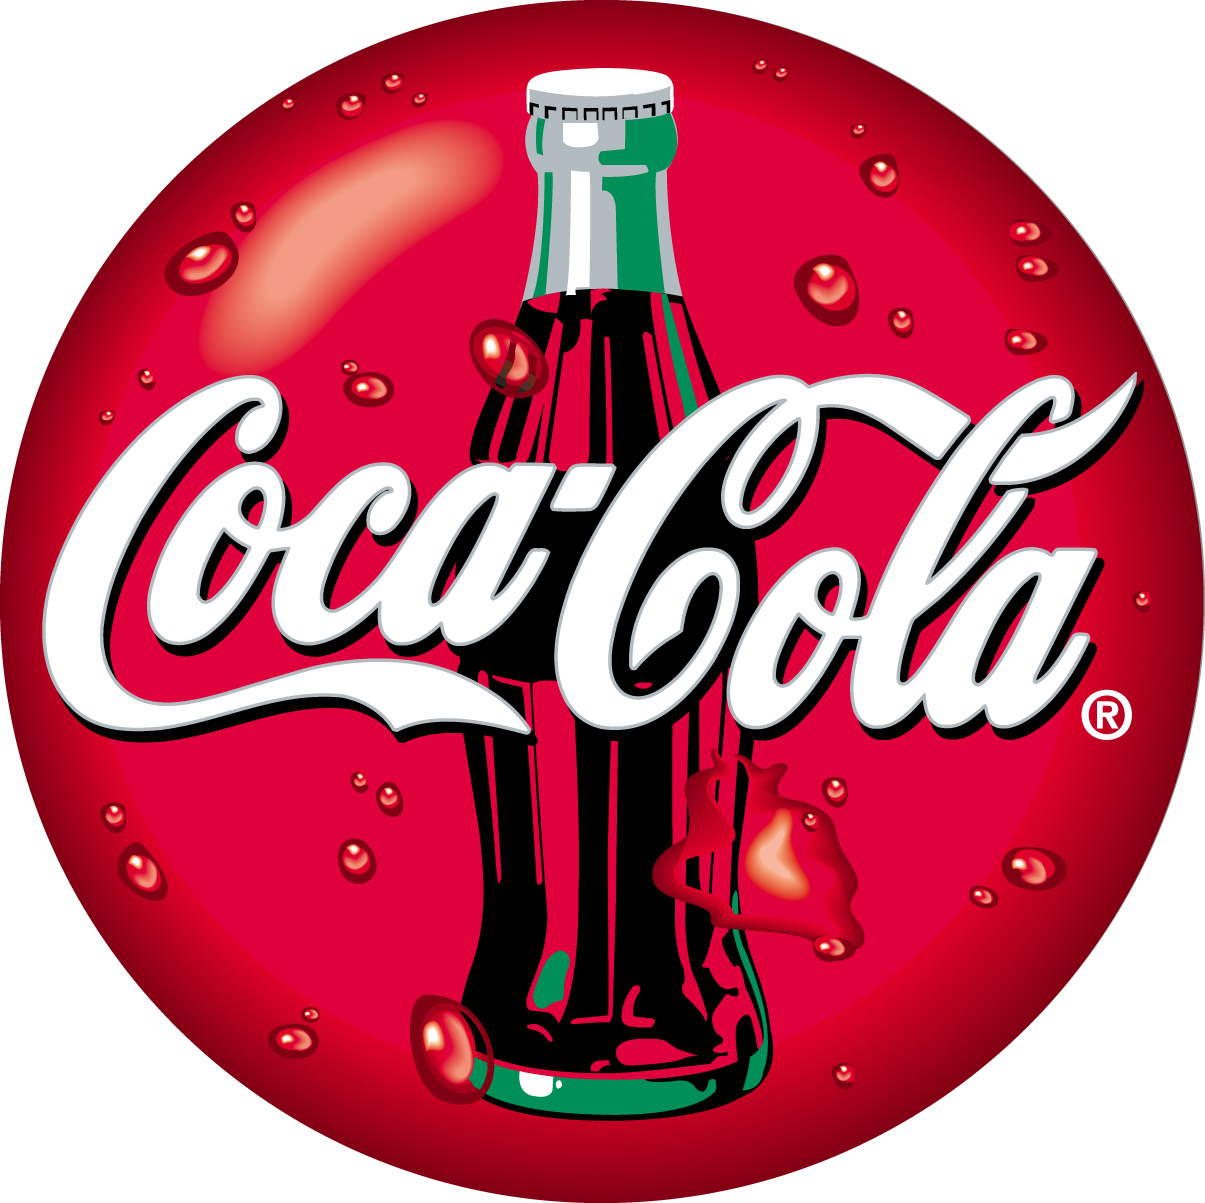 Coca cola capsule